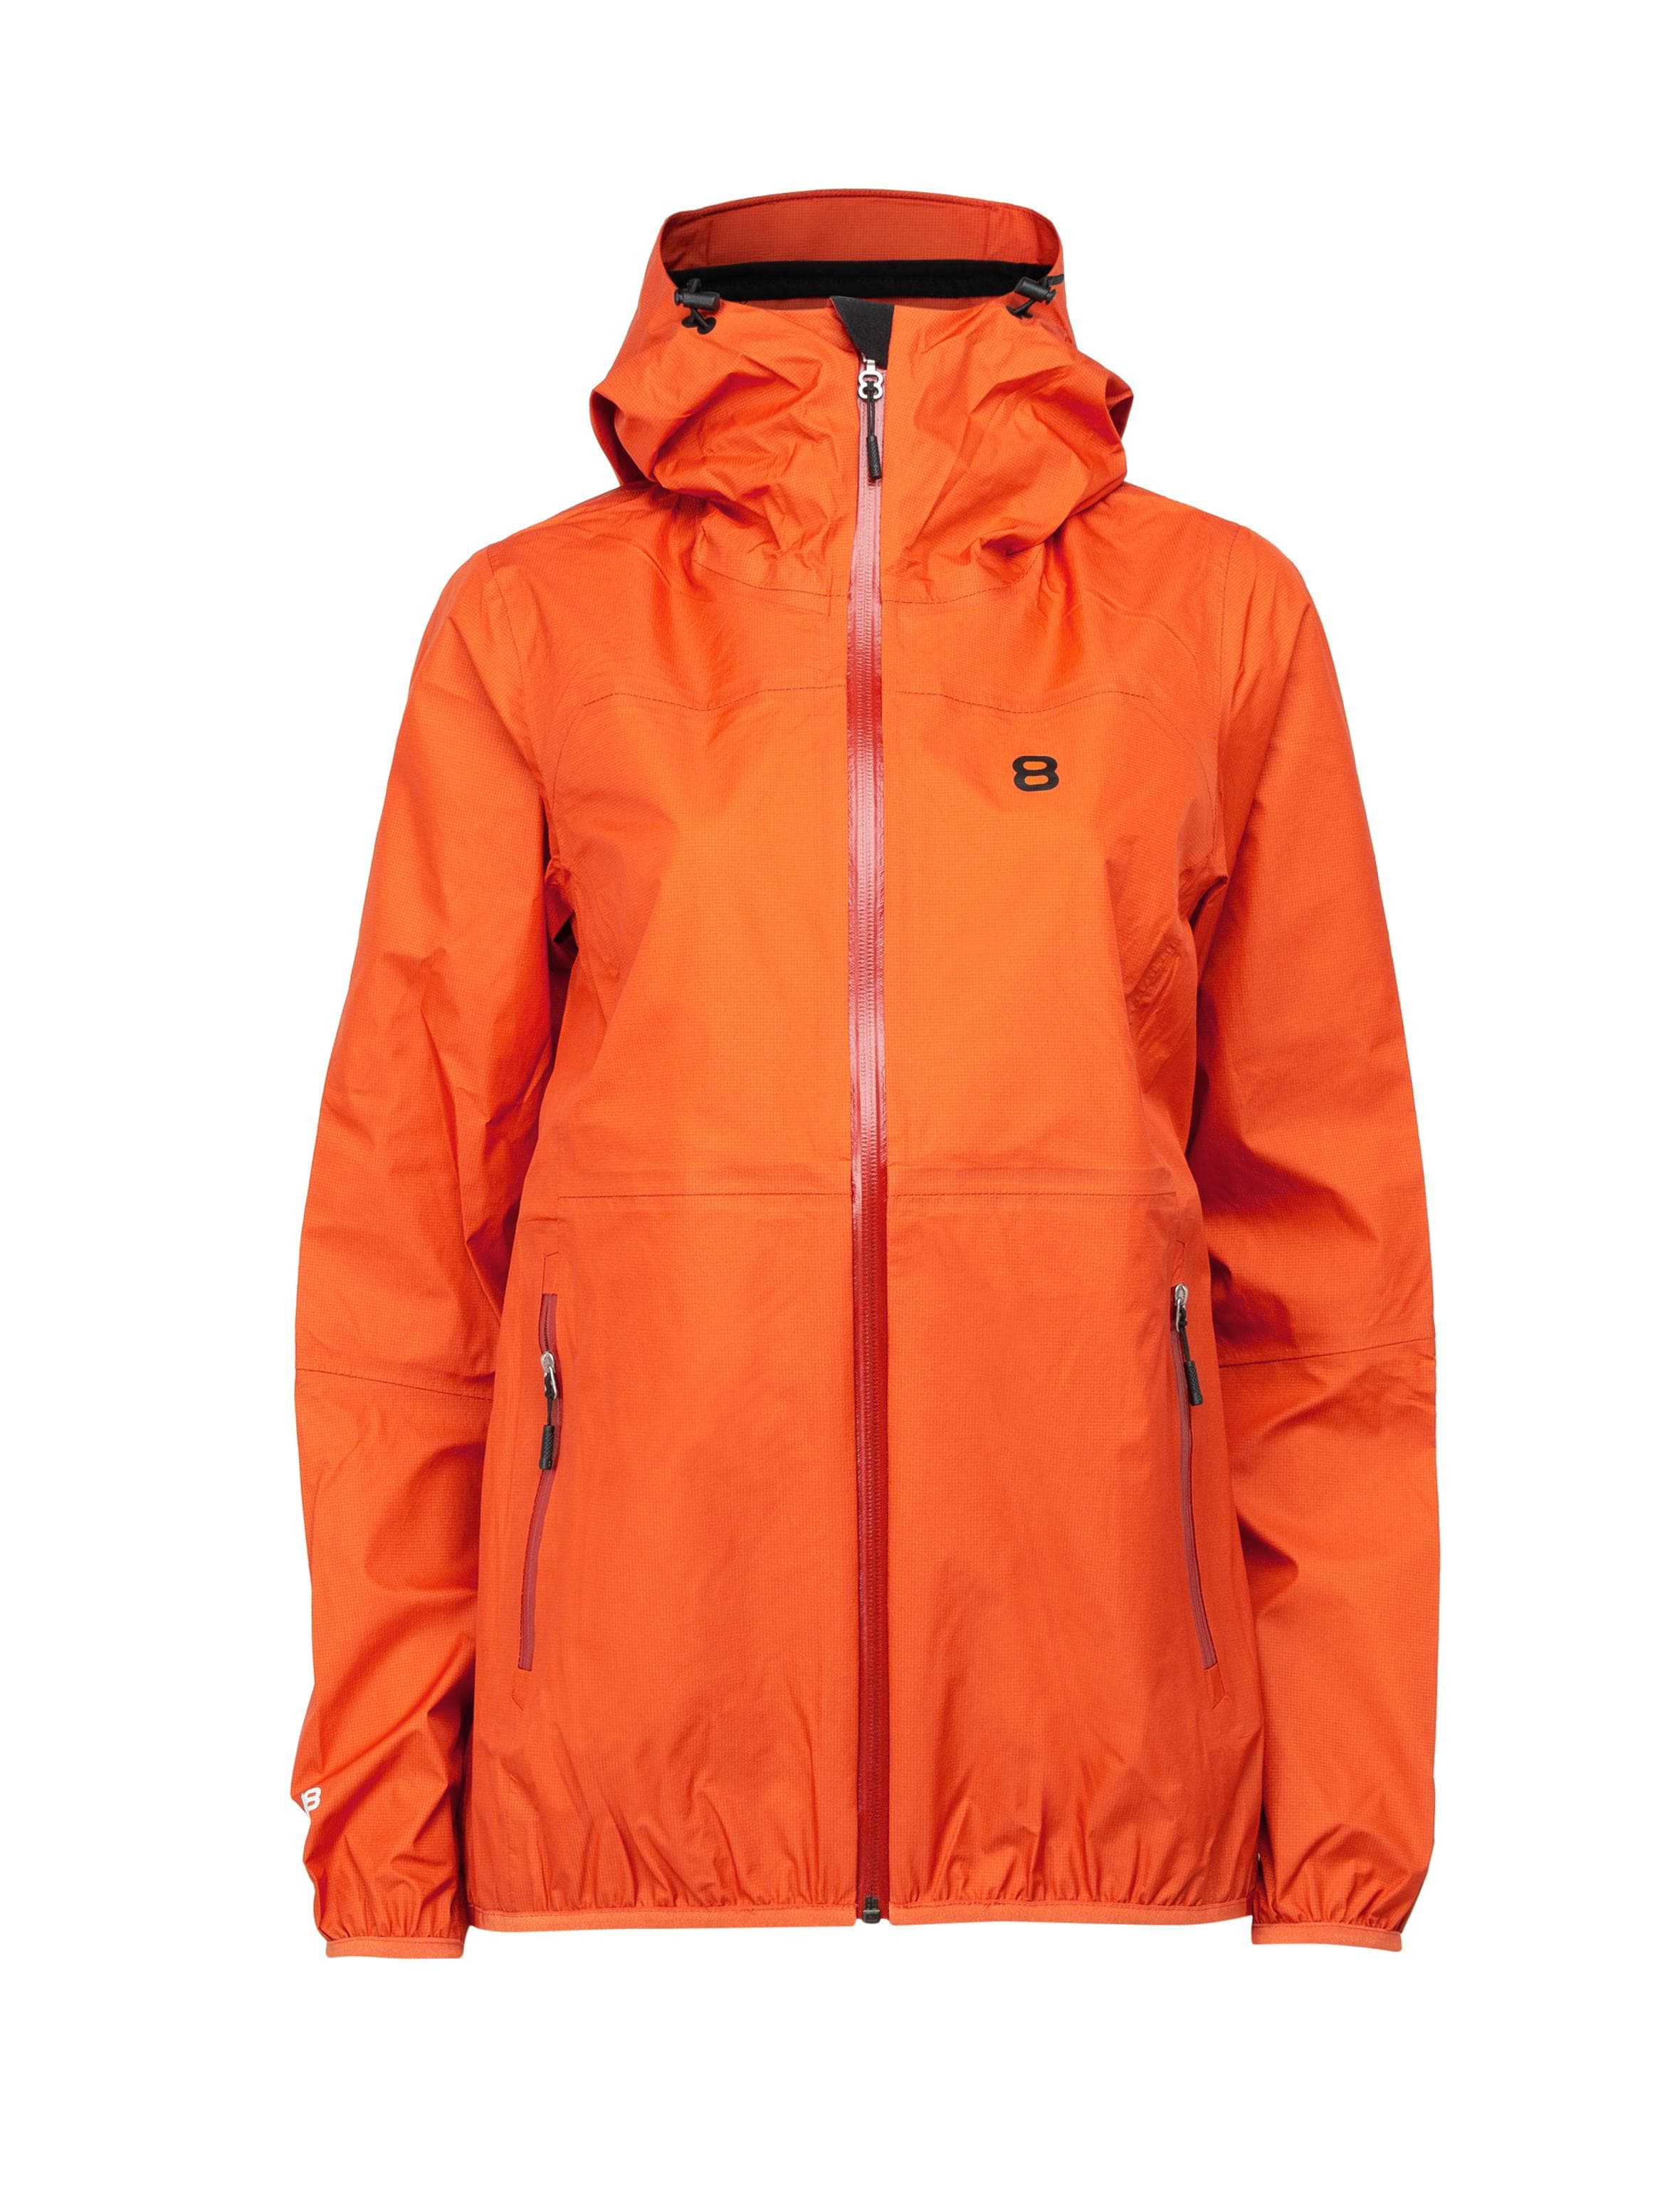 Tabei W 3L Jacket Orange Rust - Orange shell jacket women